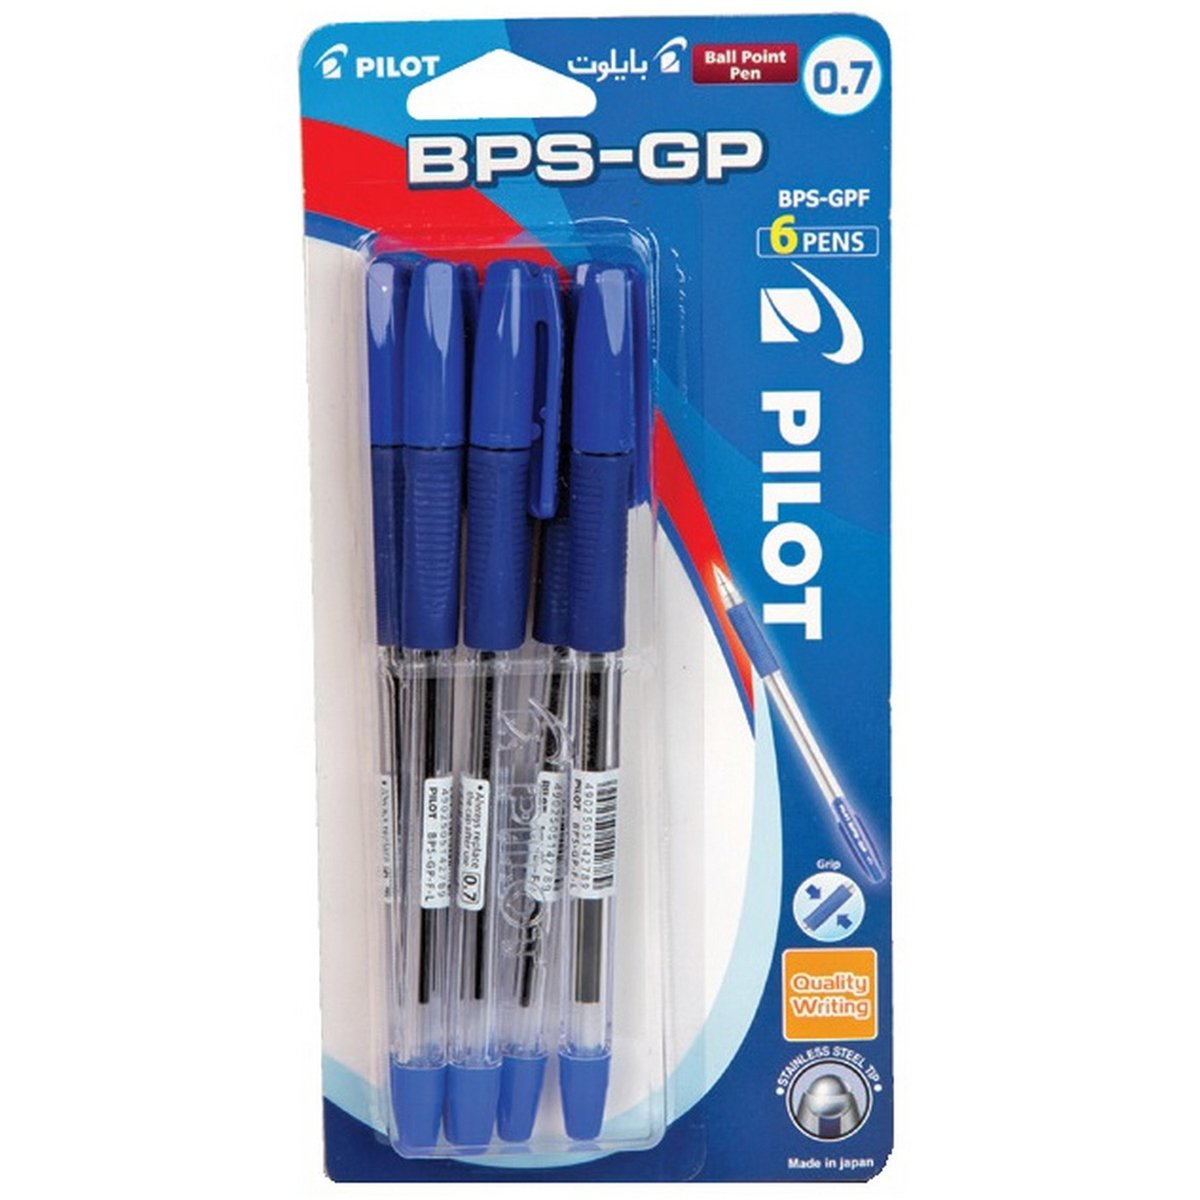 Pilot Ball Point Pen BPS-GP-F-BT6 6 Pieces